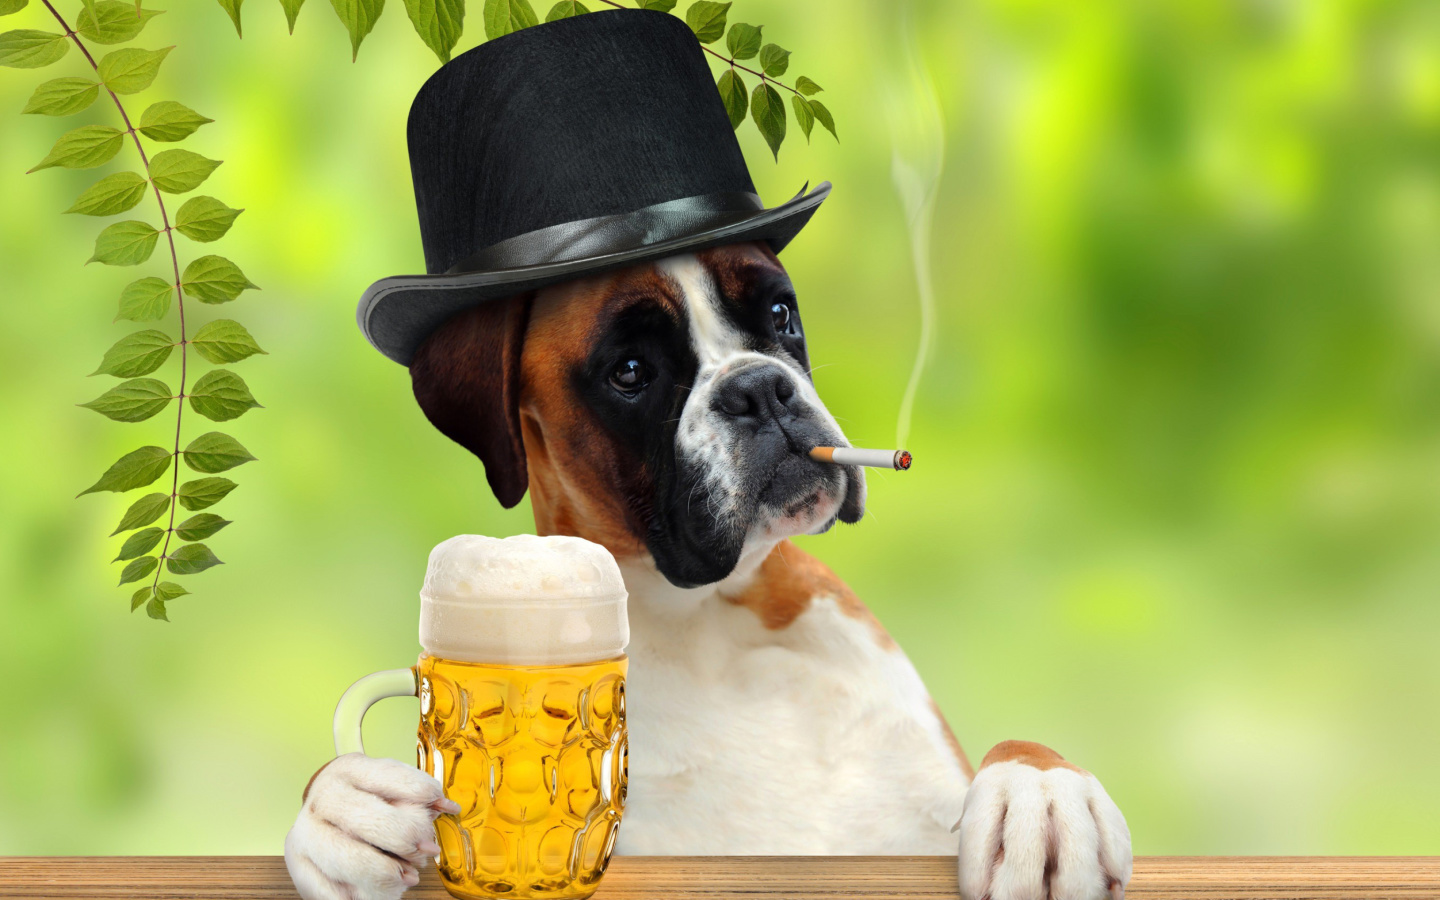 Dog drinking beer screenshot #1 1440x900